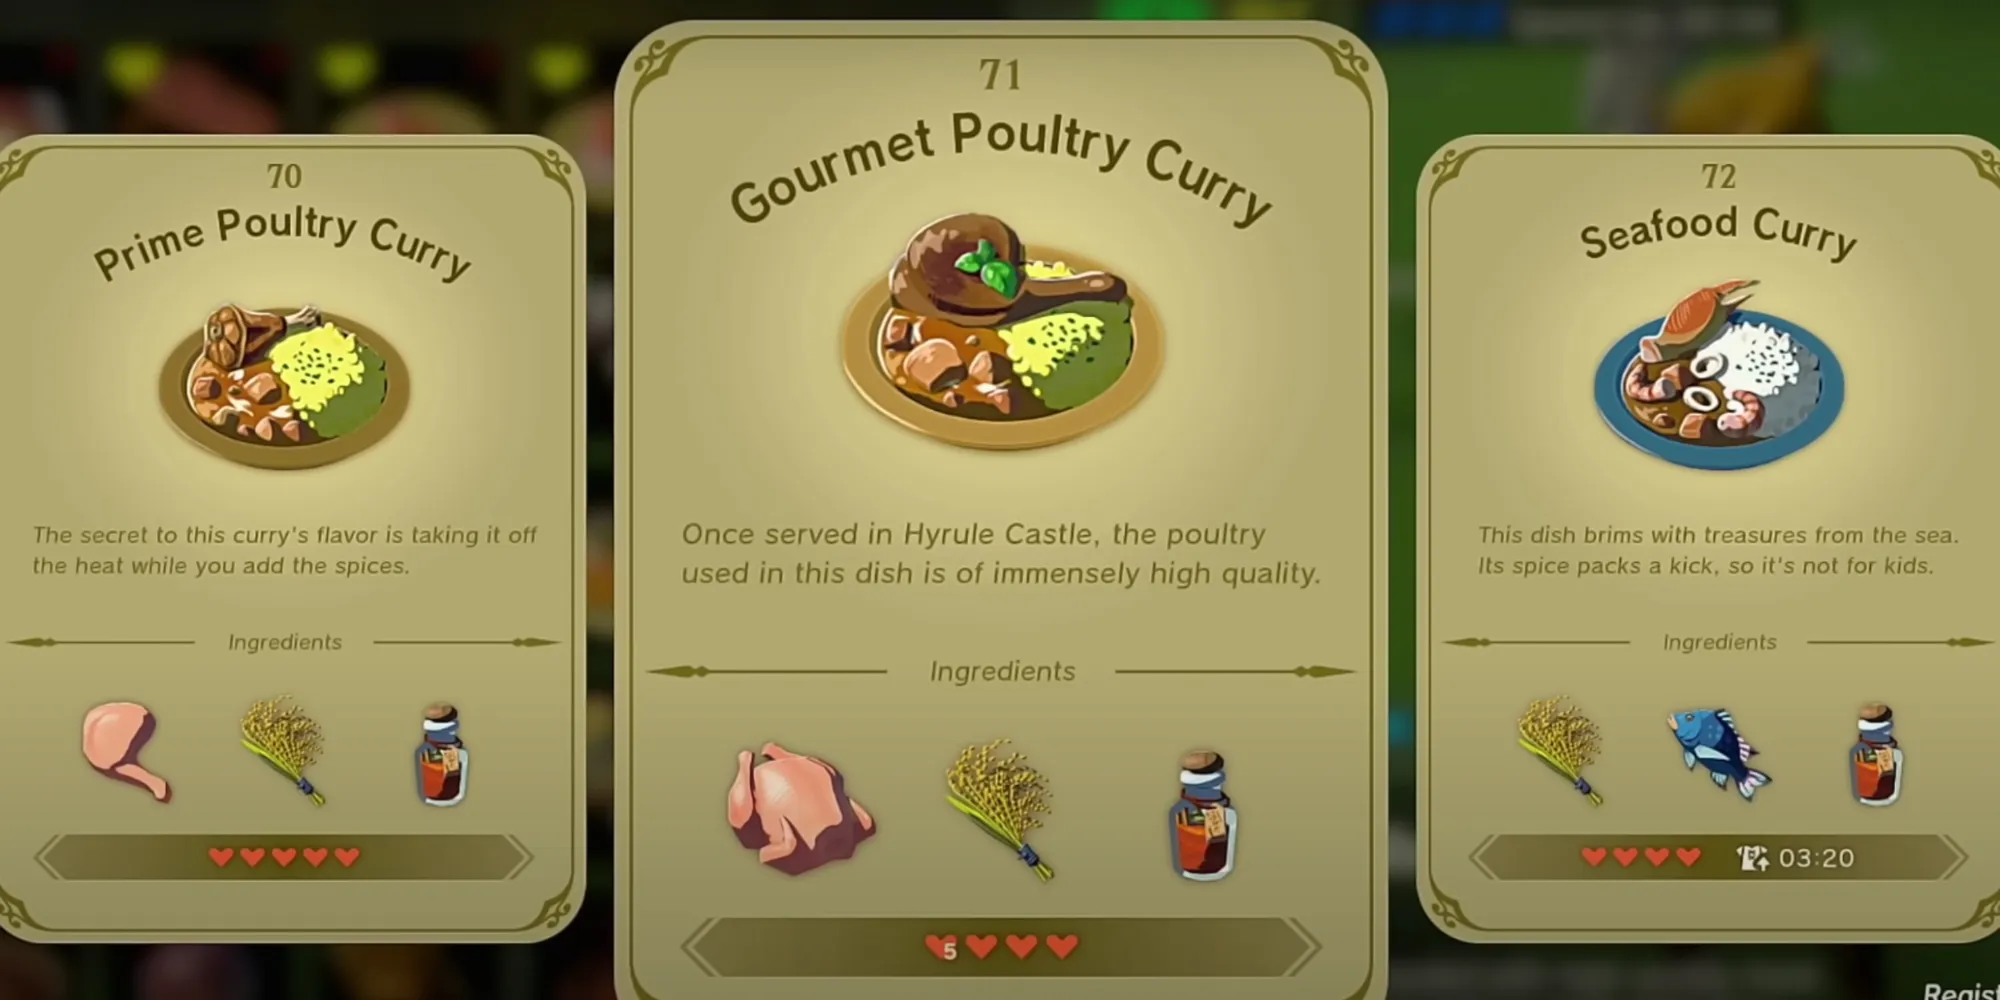 Une recette pour un curry au poulet de qualité suprême